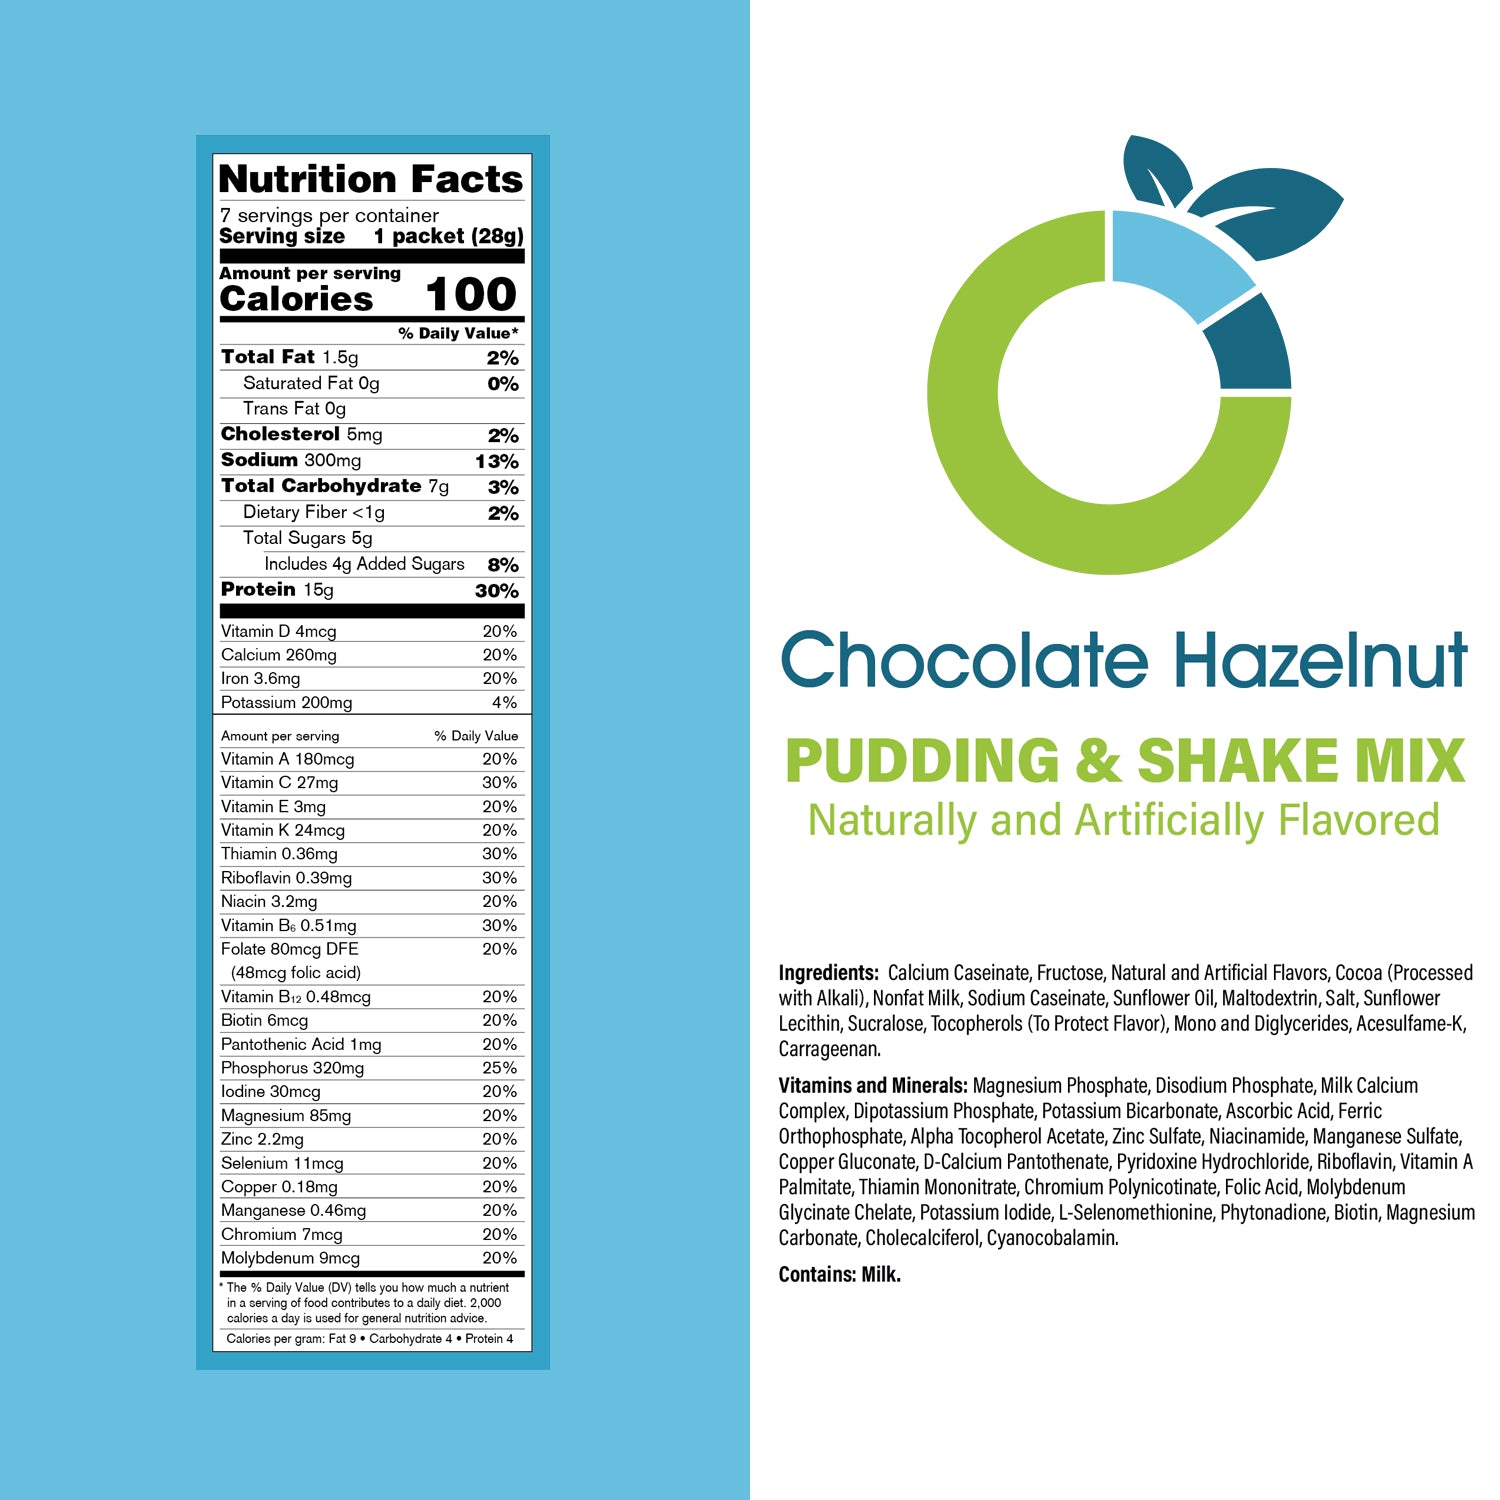 Chocolate Hazelnut Pudding & Shake Mix